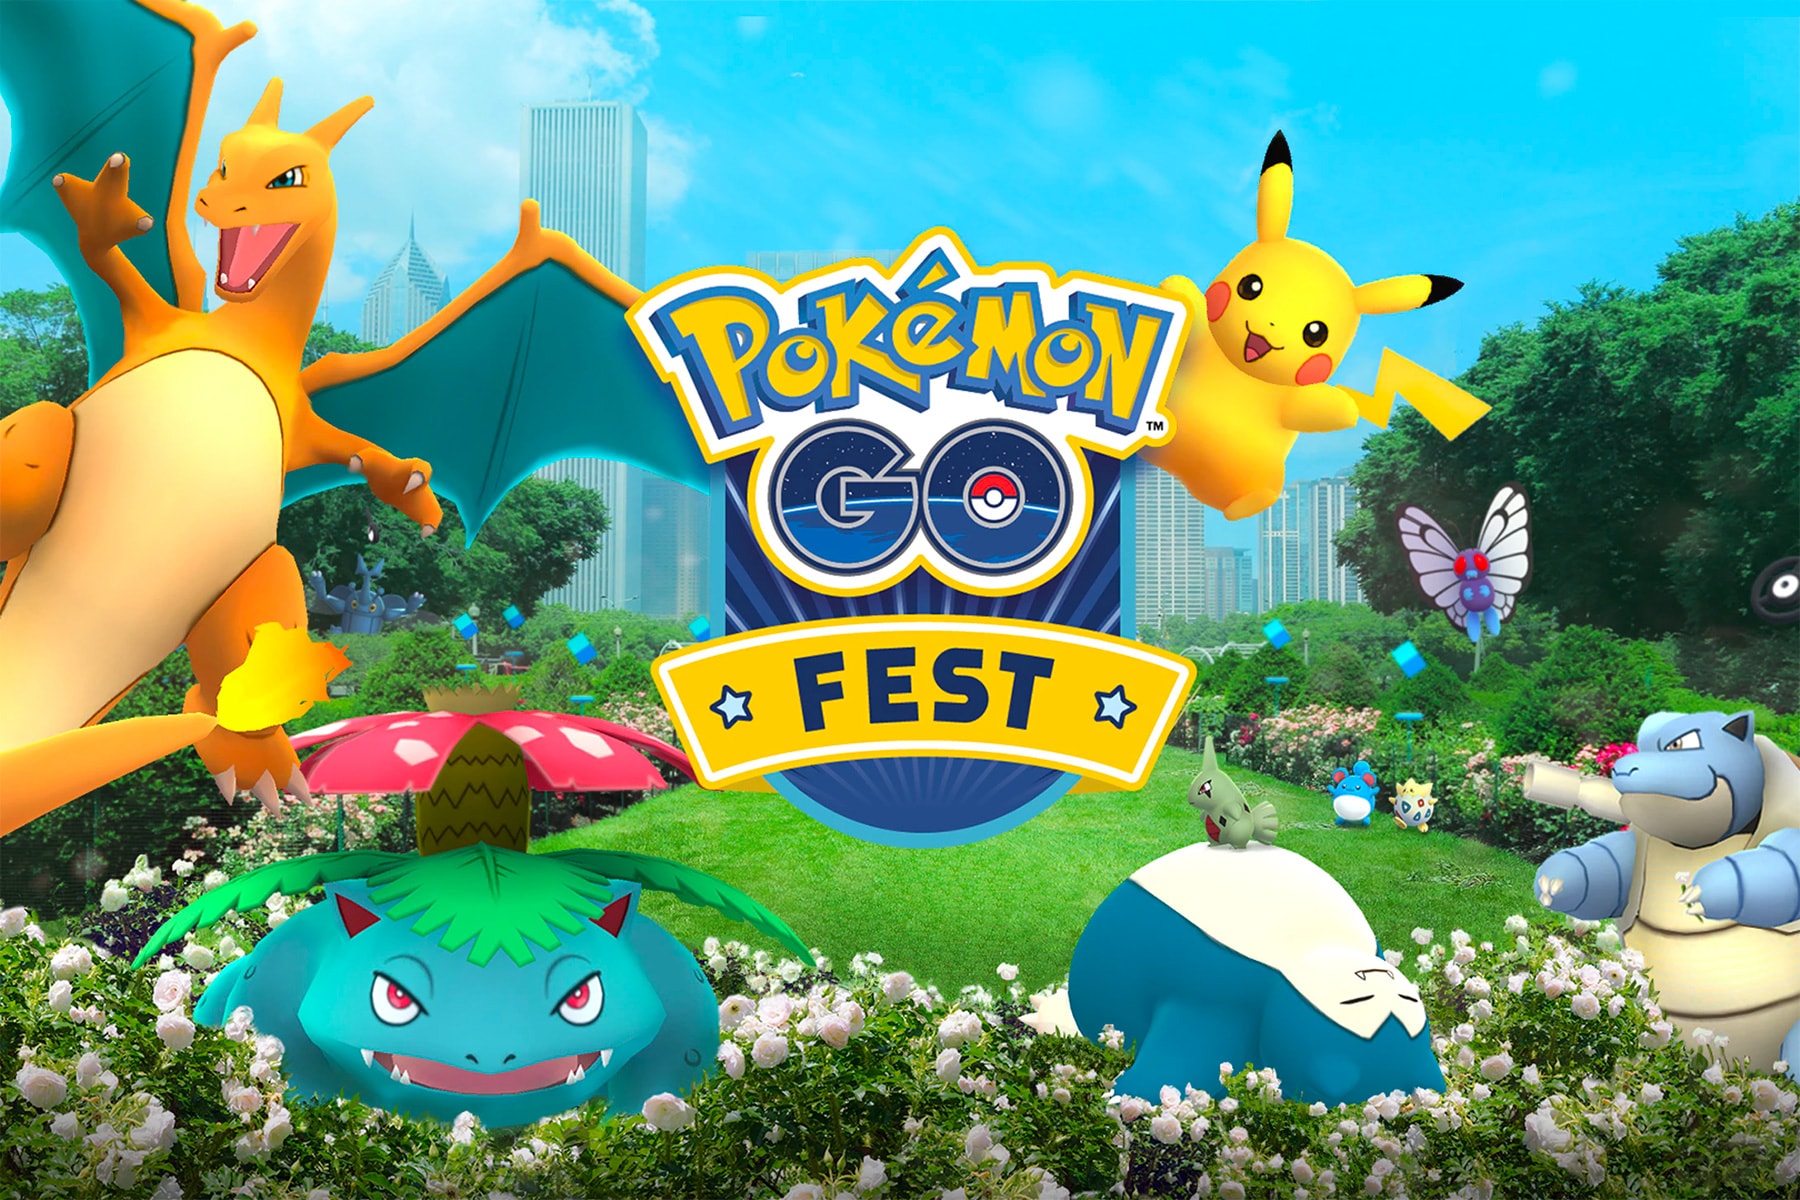 Niantic Pokémon GO Fest Lawsuit $1.5 Million USD chicago illinois class actions app gaming